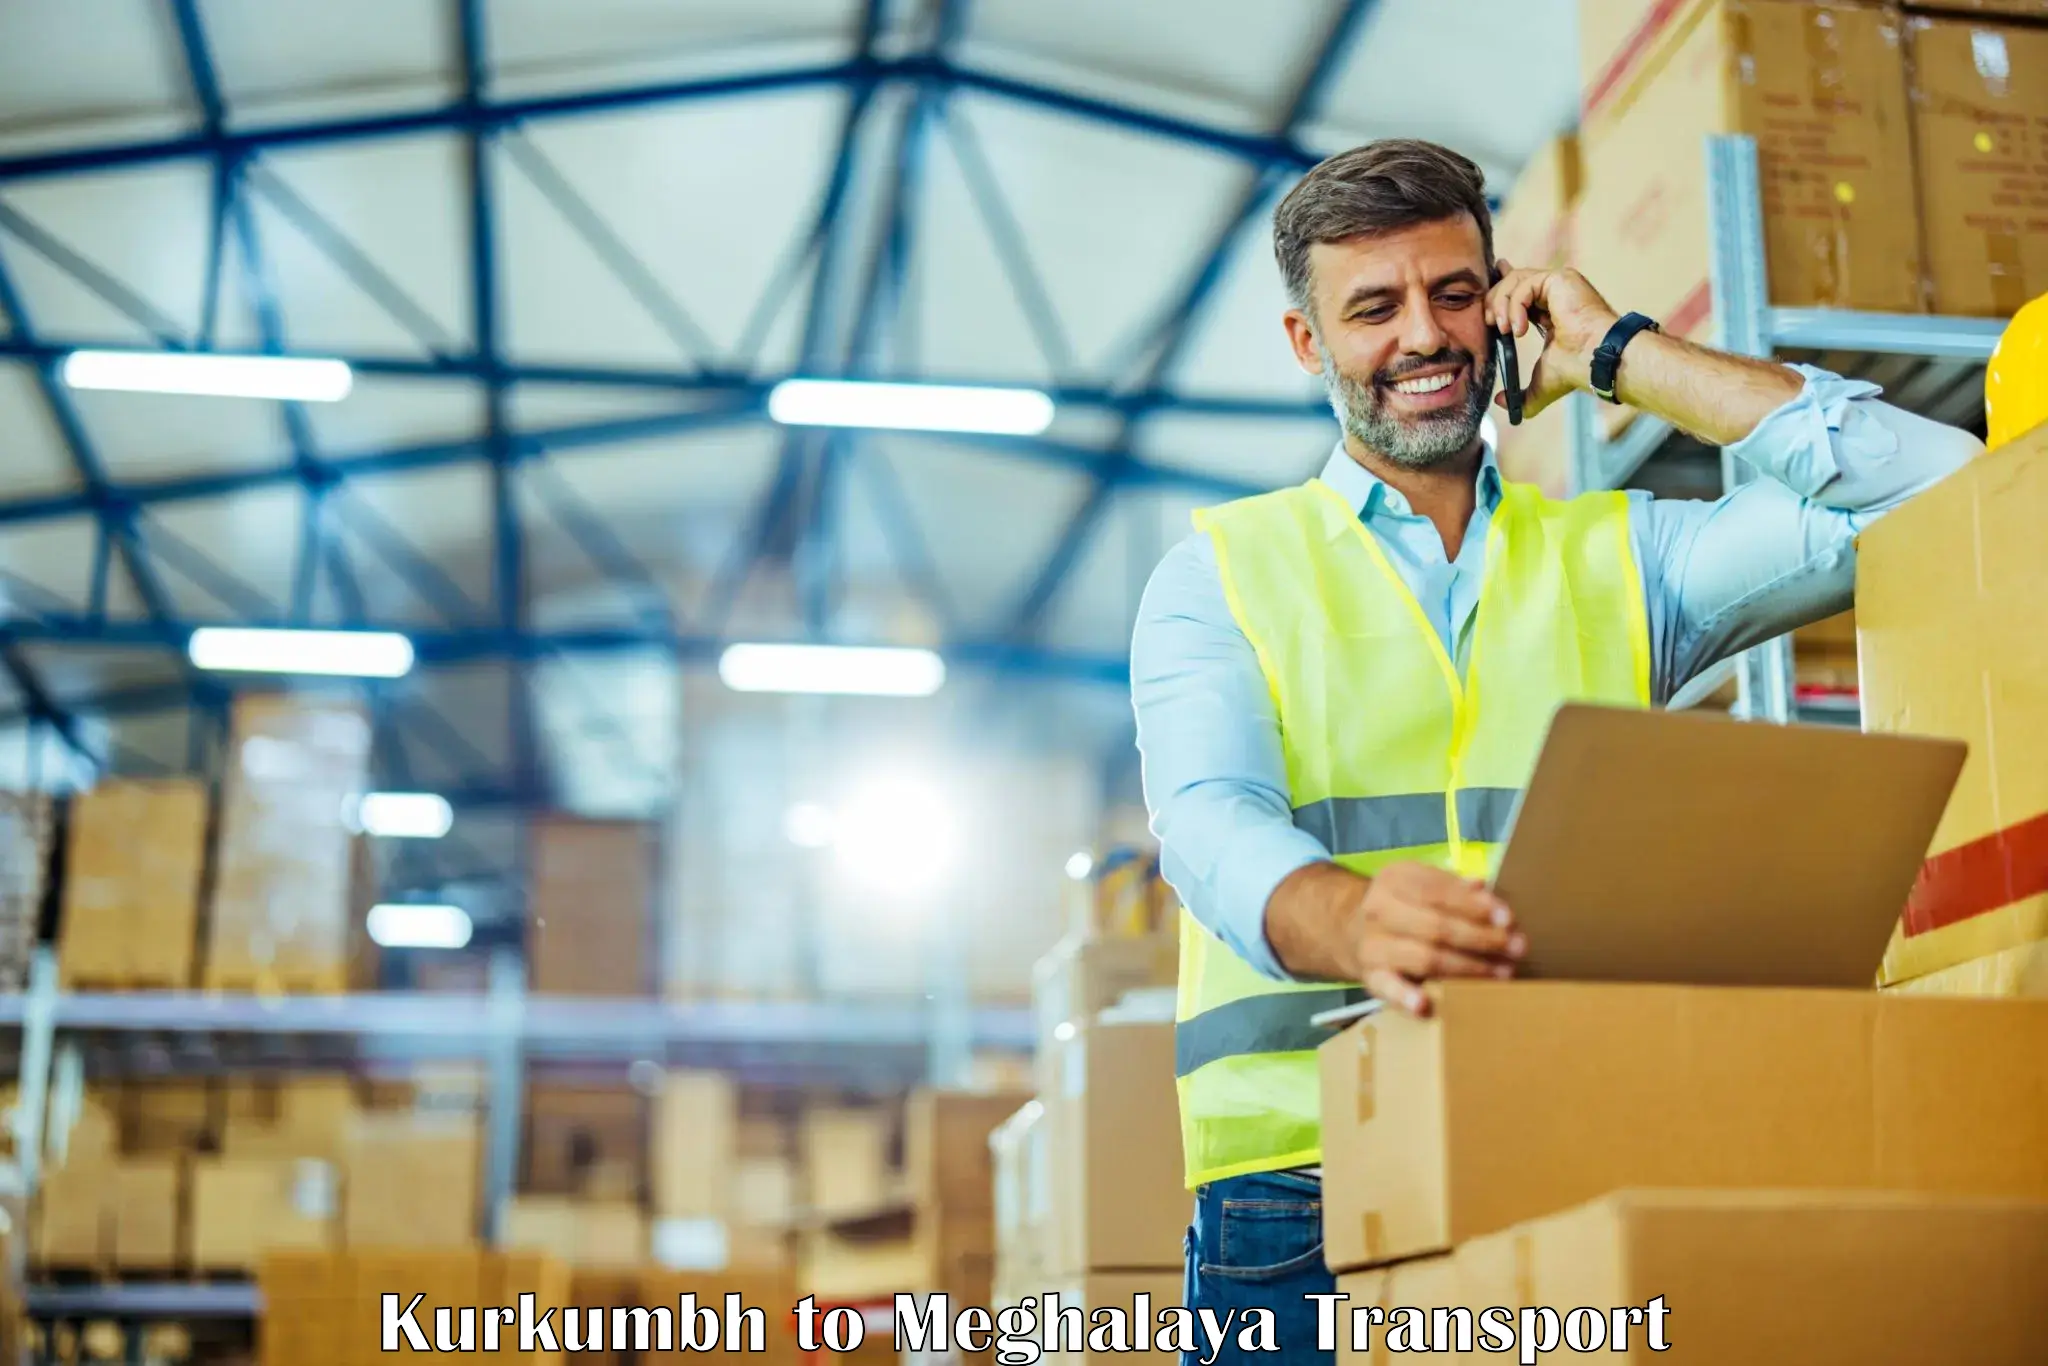 Shipping partner Kurkumbh to Garobadha